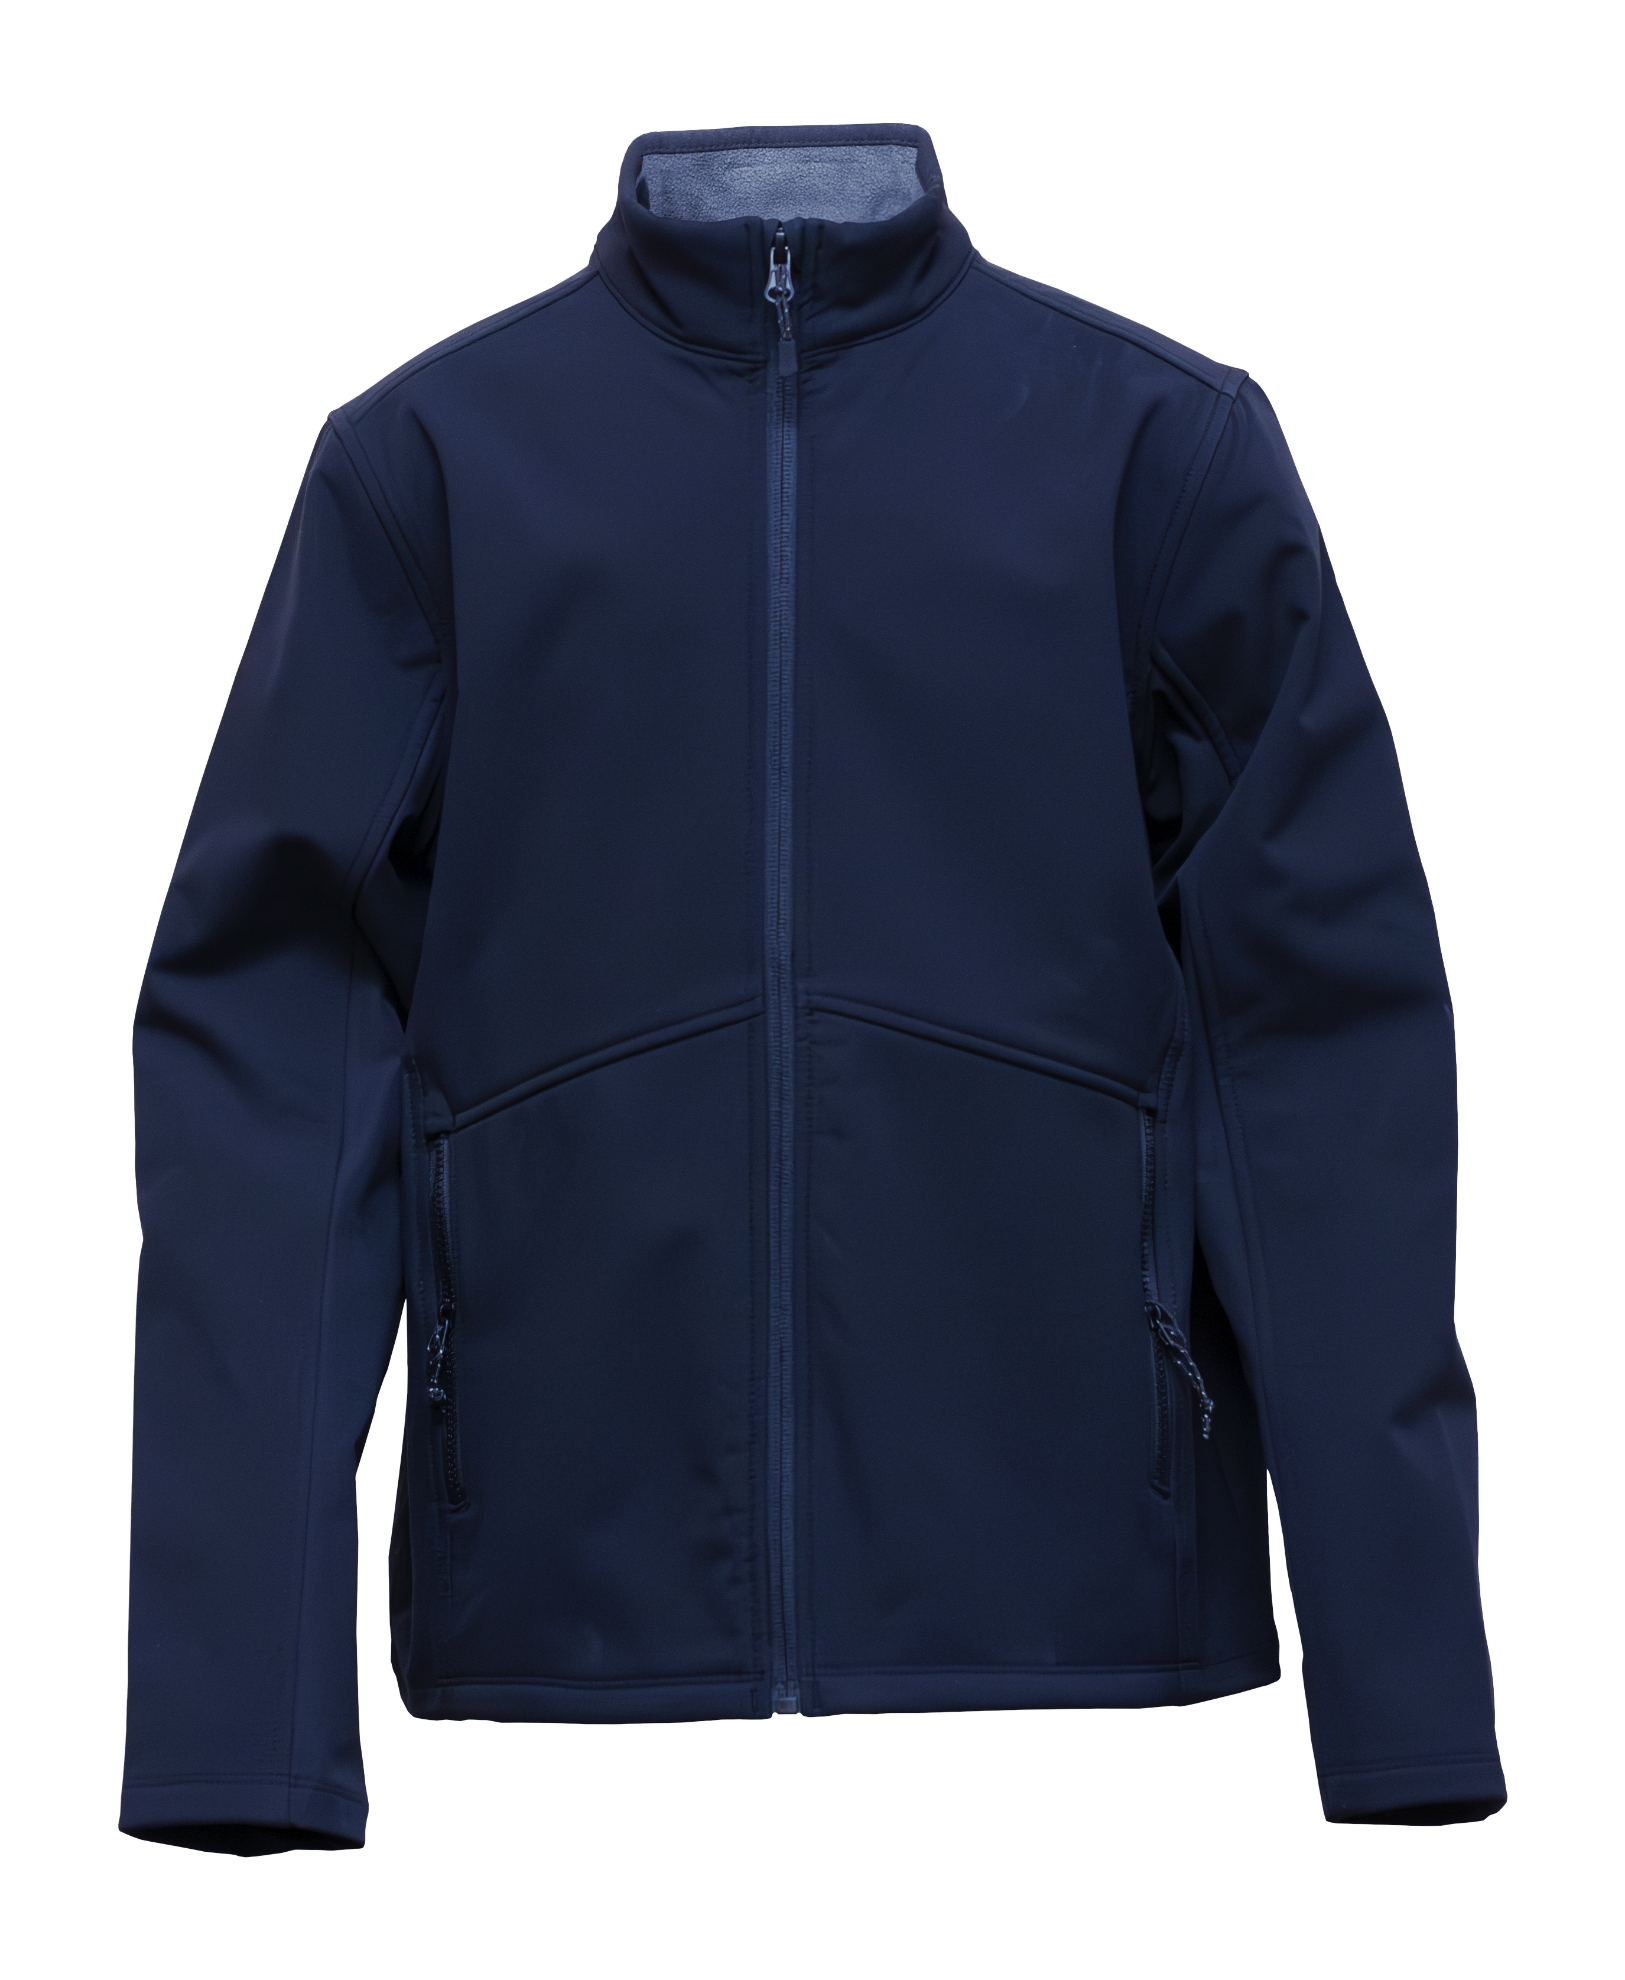 BAW Athletic Wear ST20Y - Youth Softshell Jacket